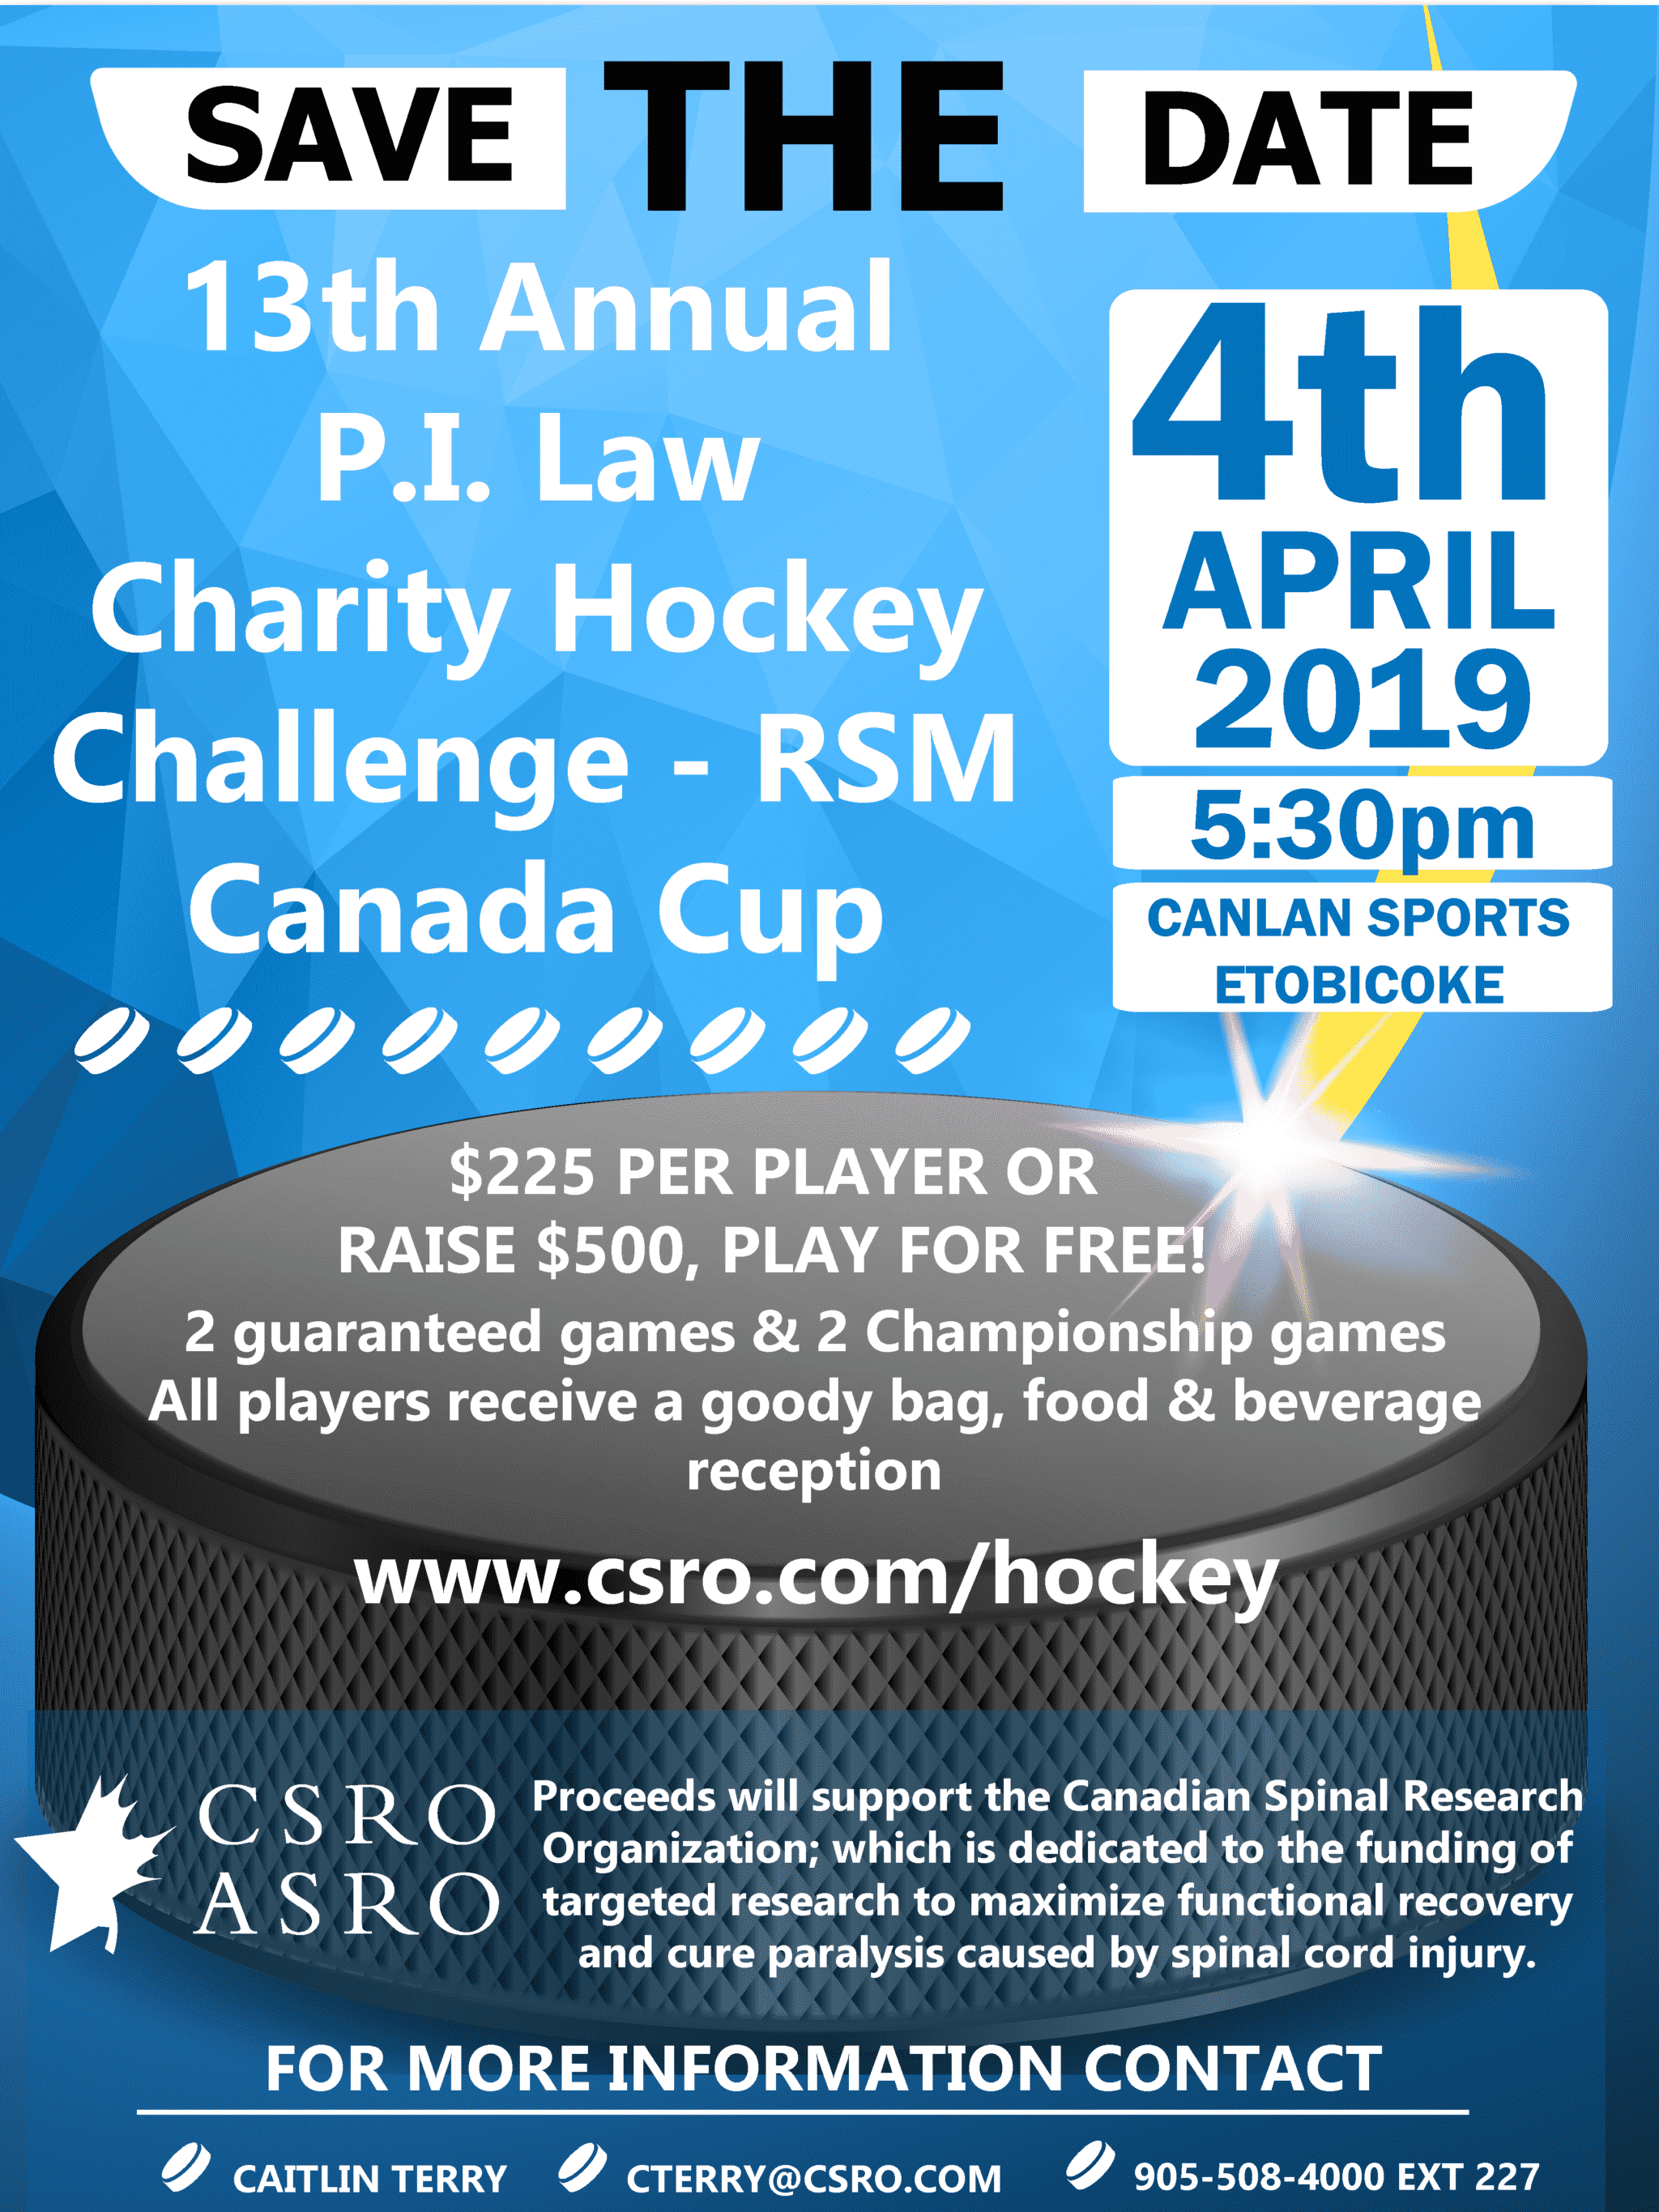 CSRO hockey challenge 2019 poster